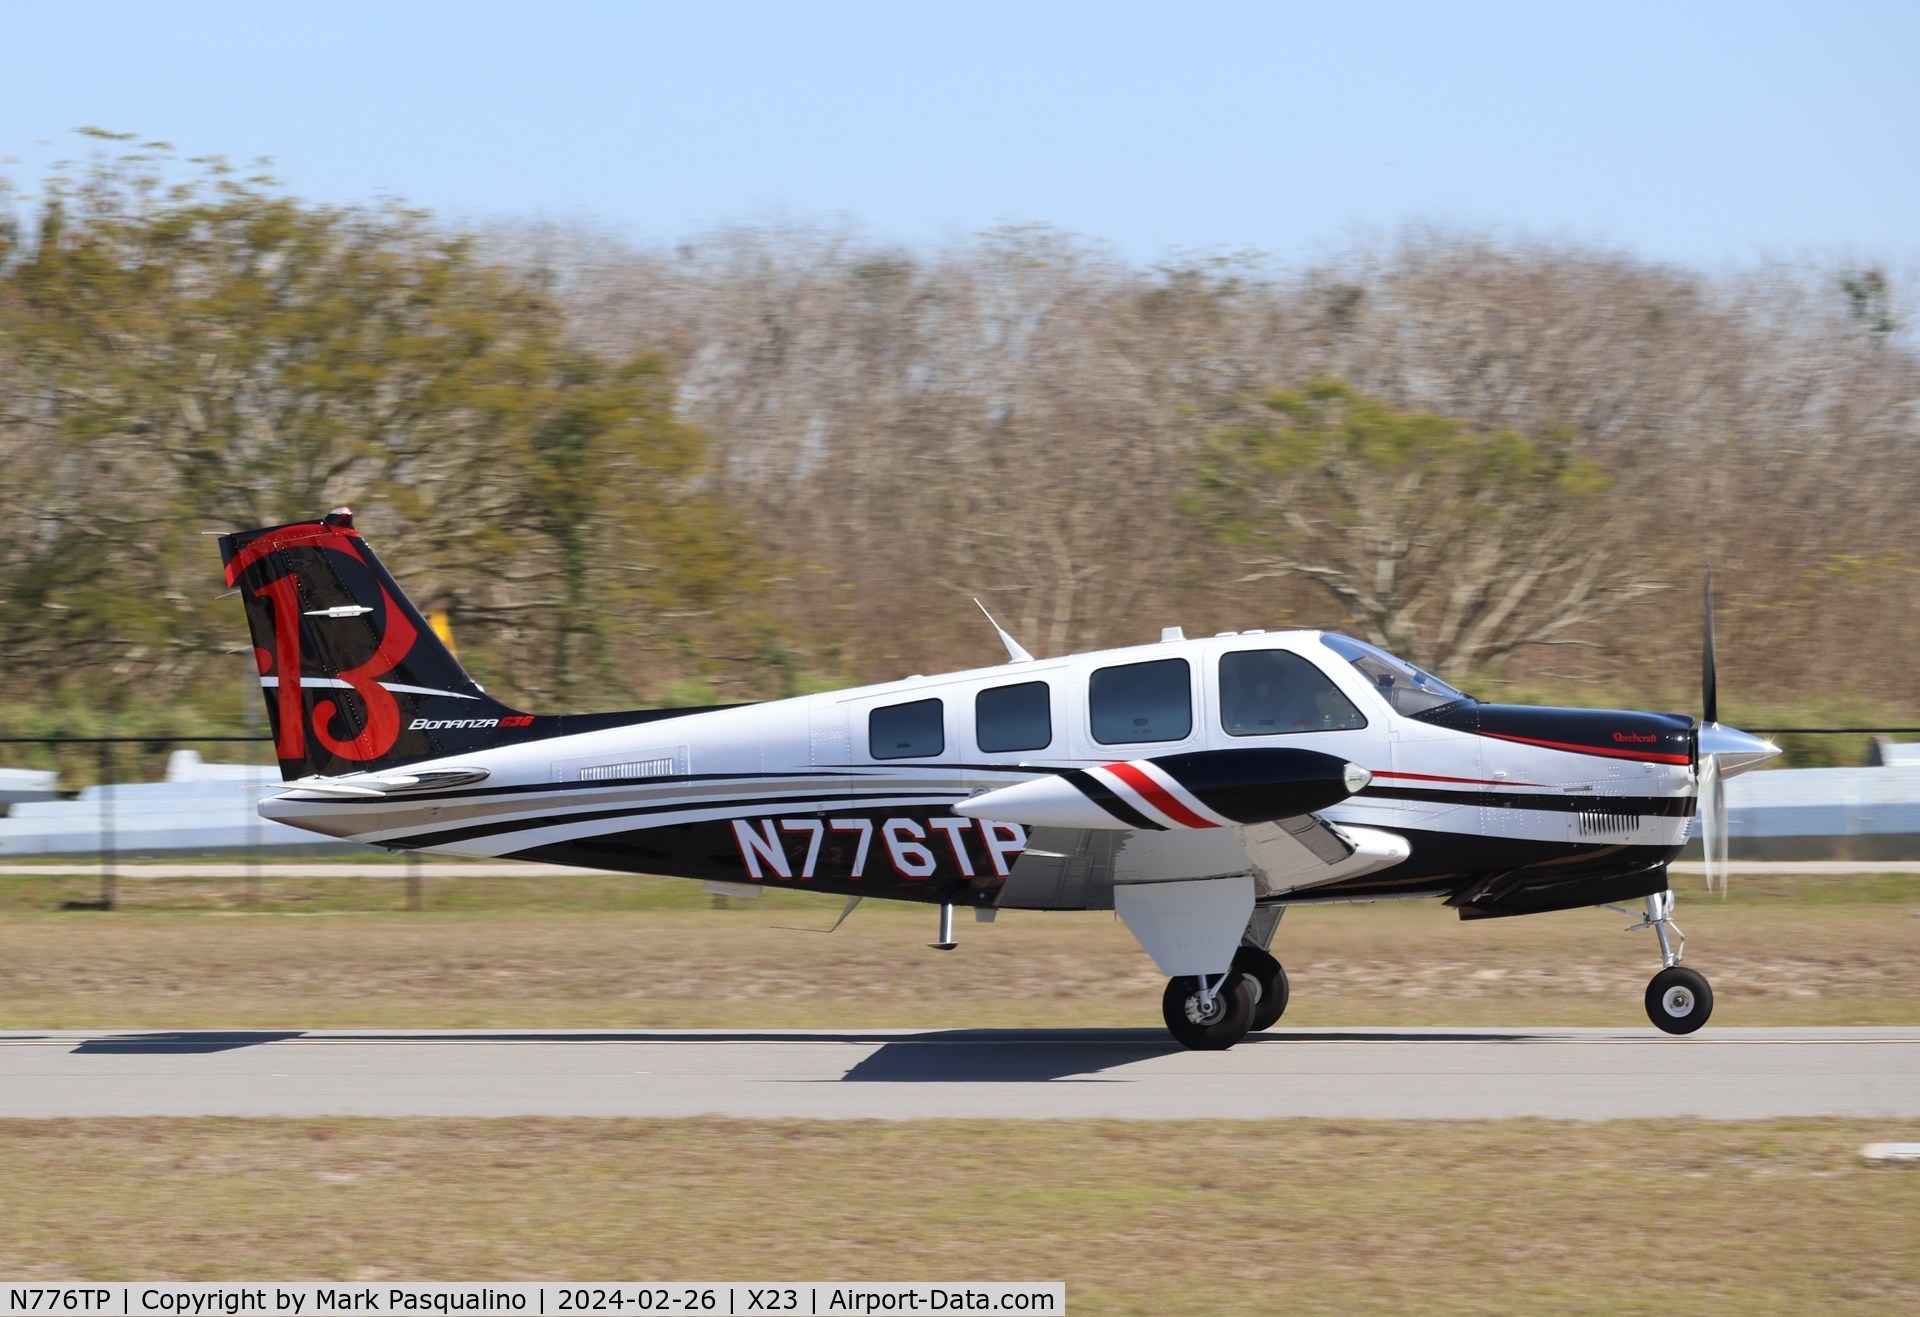 N776TP, 2014 Beechcraft G36 Bonanza C/N E-4027, Beech G36